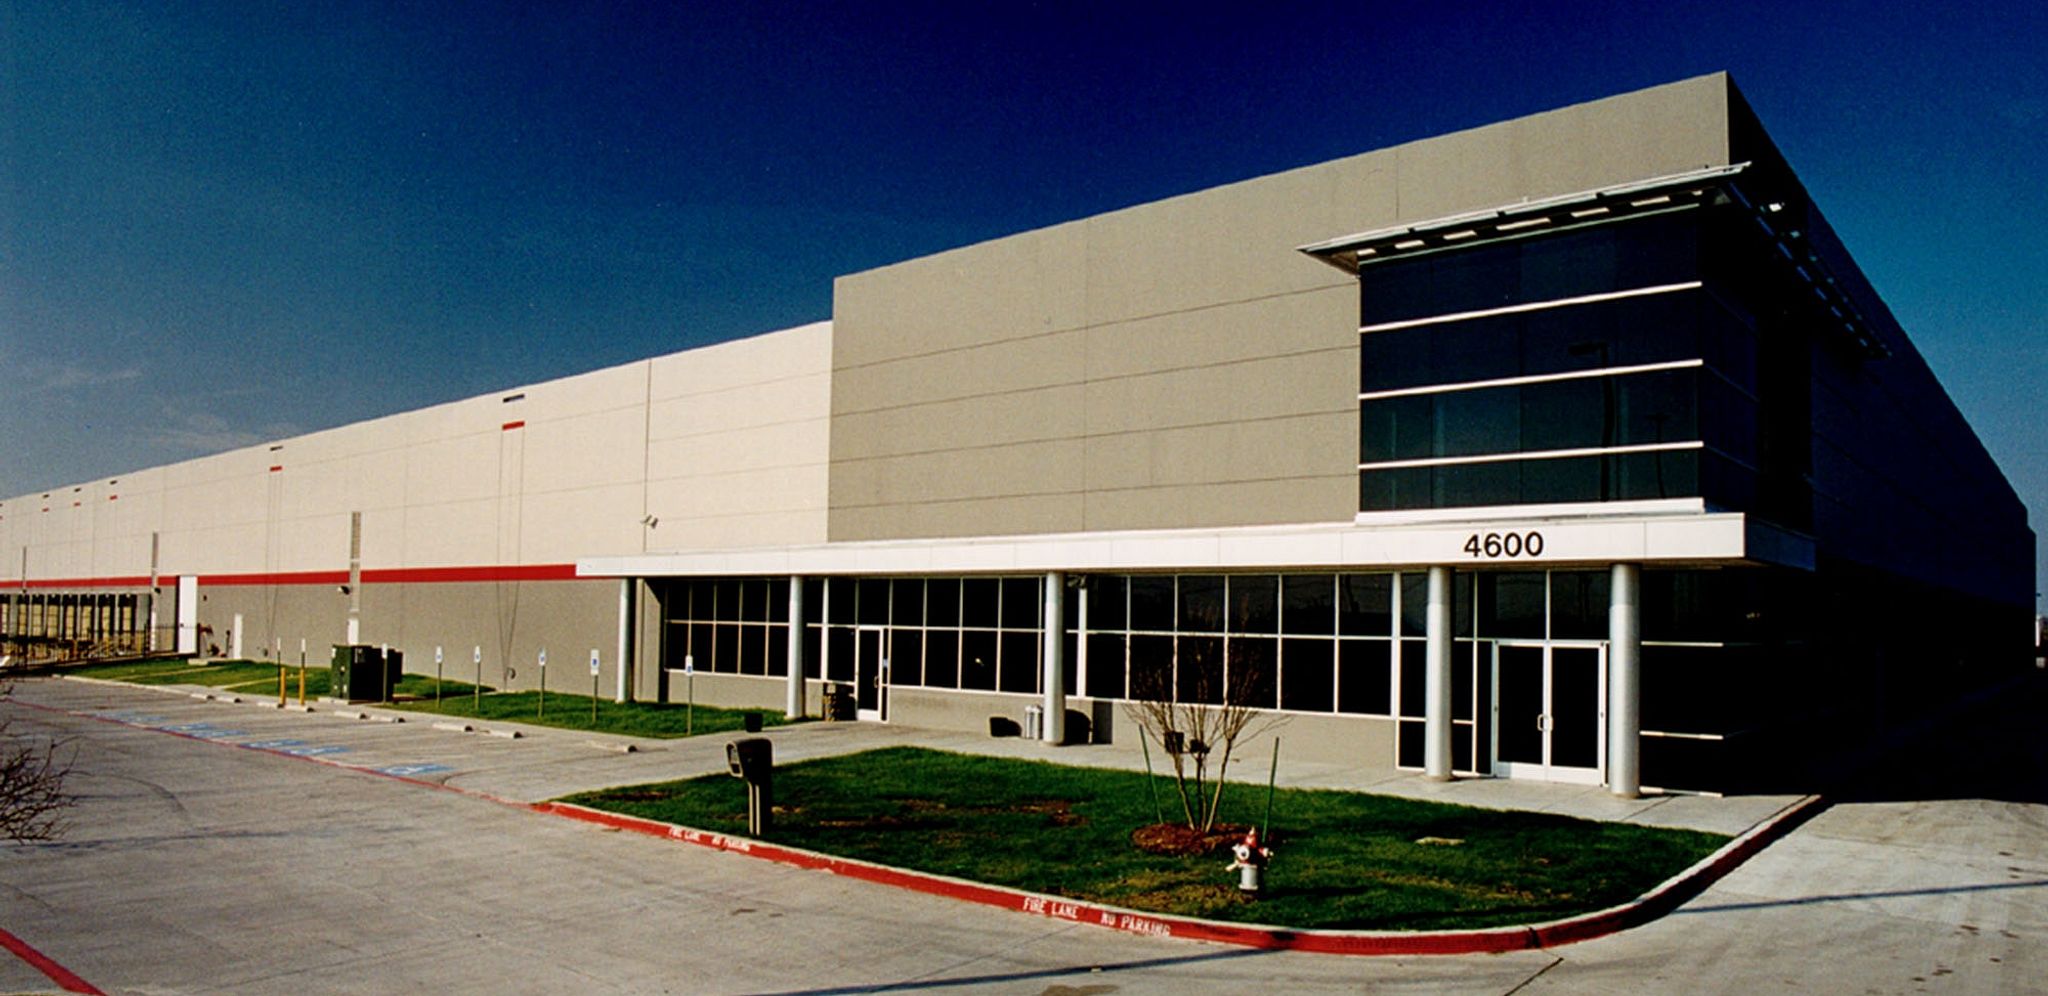 Office Depot | Arlington, Texas Warehouse Design Build Construction Example